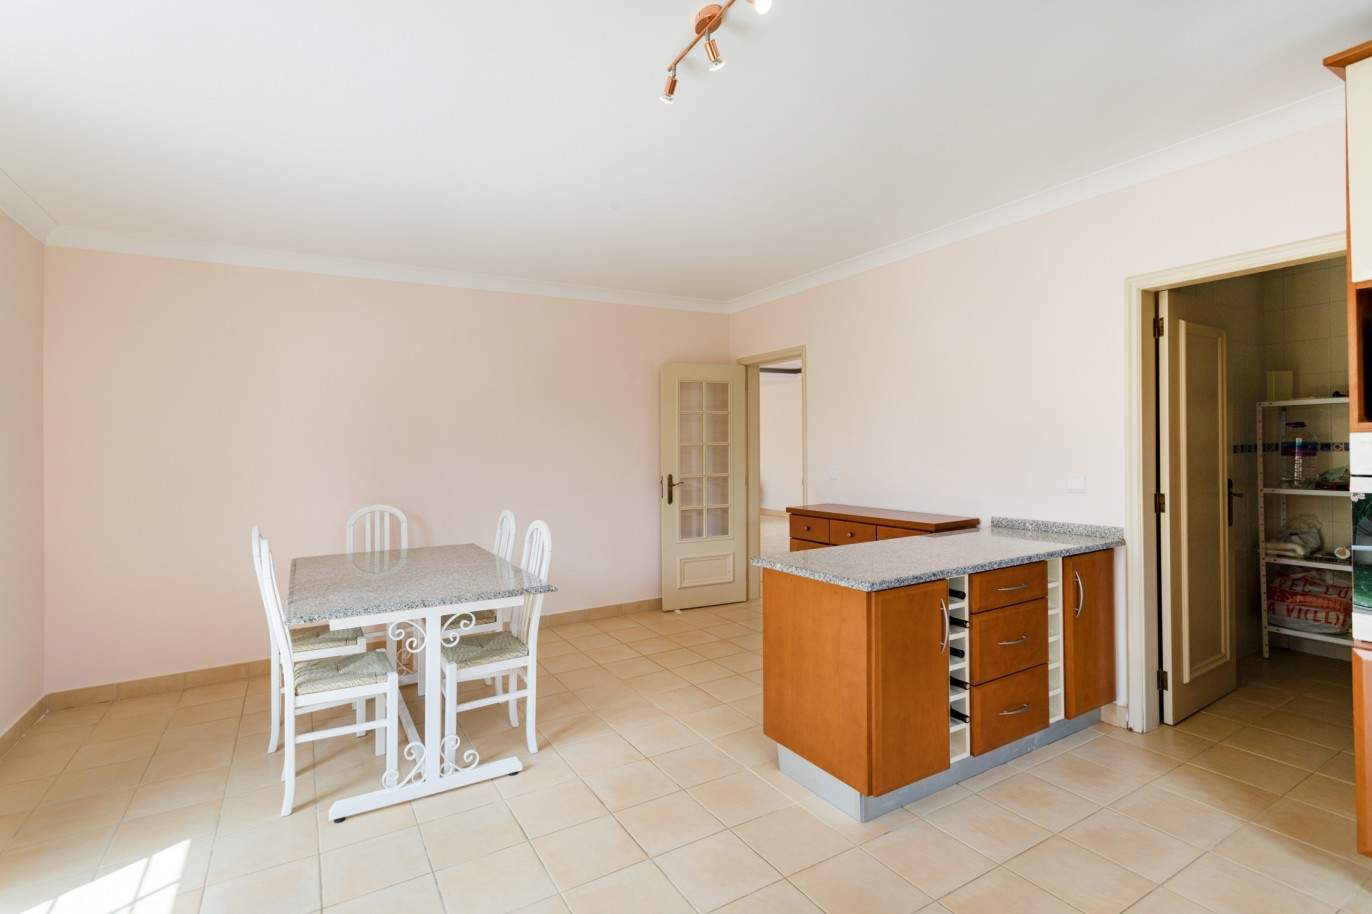 4 Bedroom Villa with pool à vendre à Quarteira, Algarve_201716